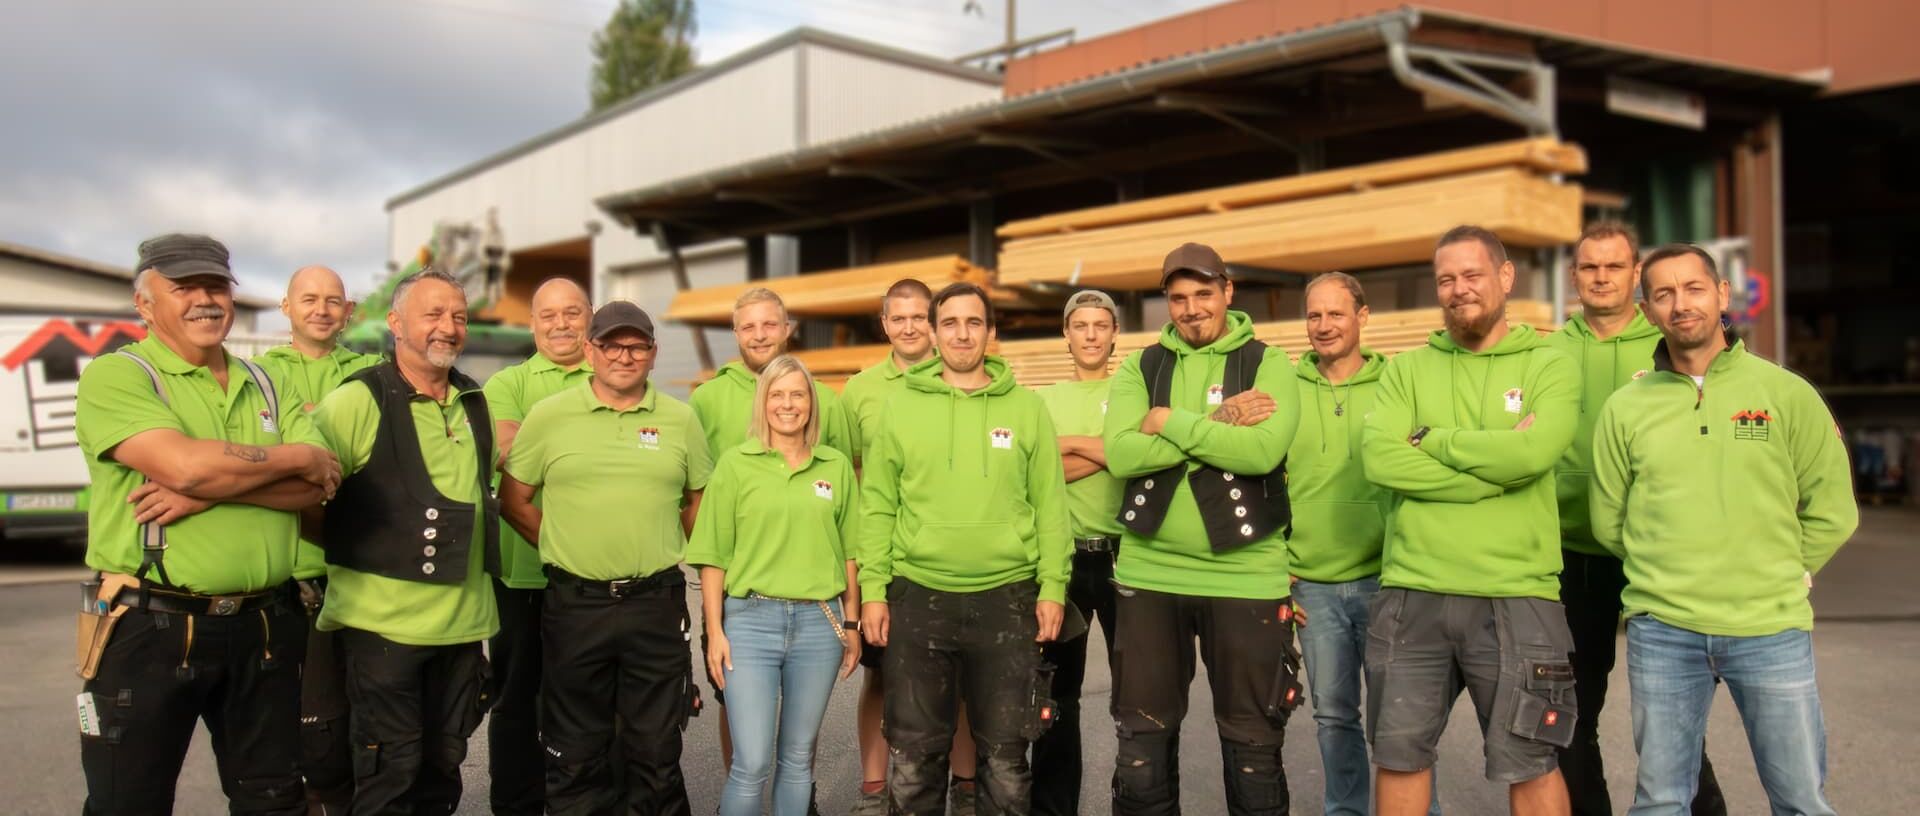 Das Team von Heiko Muuss steht nebeneinander auf dem Firmengelände. Im Hintergrund aufeinander gestapeltes und geordnetes Holz.